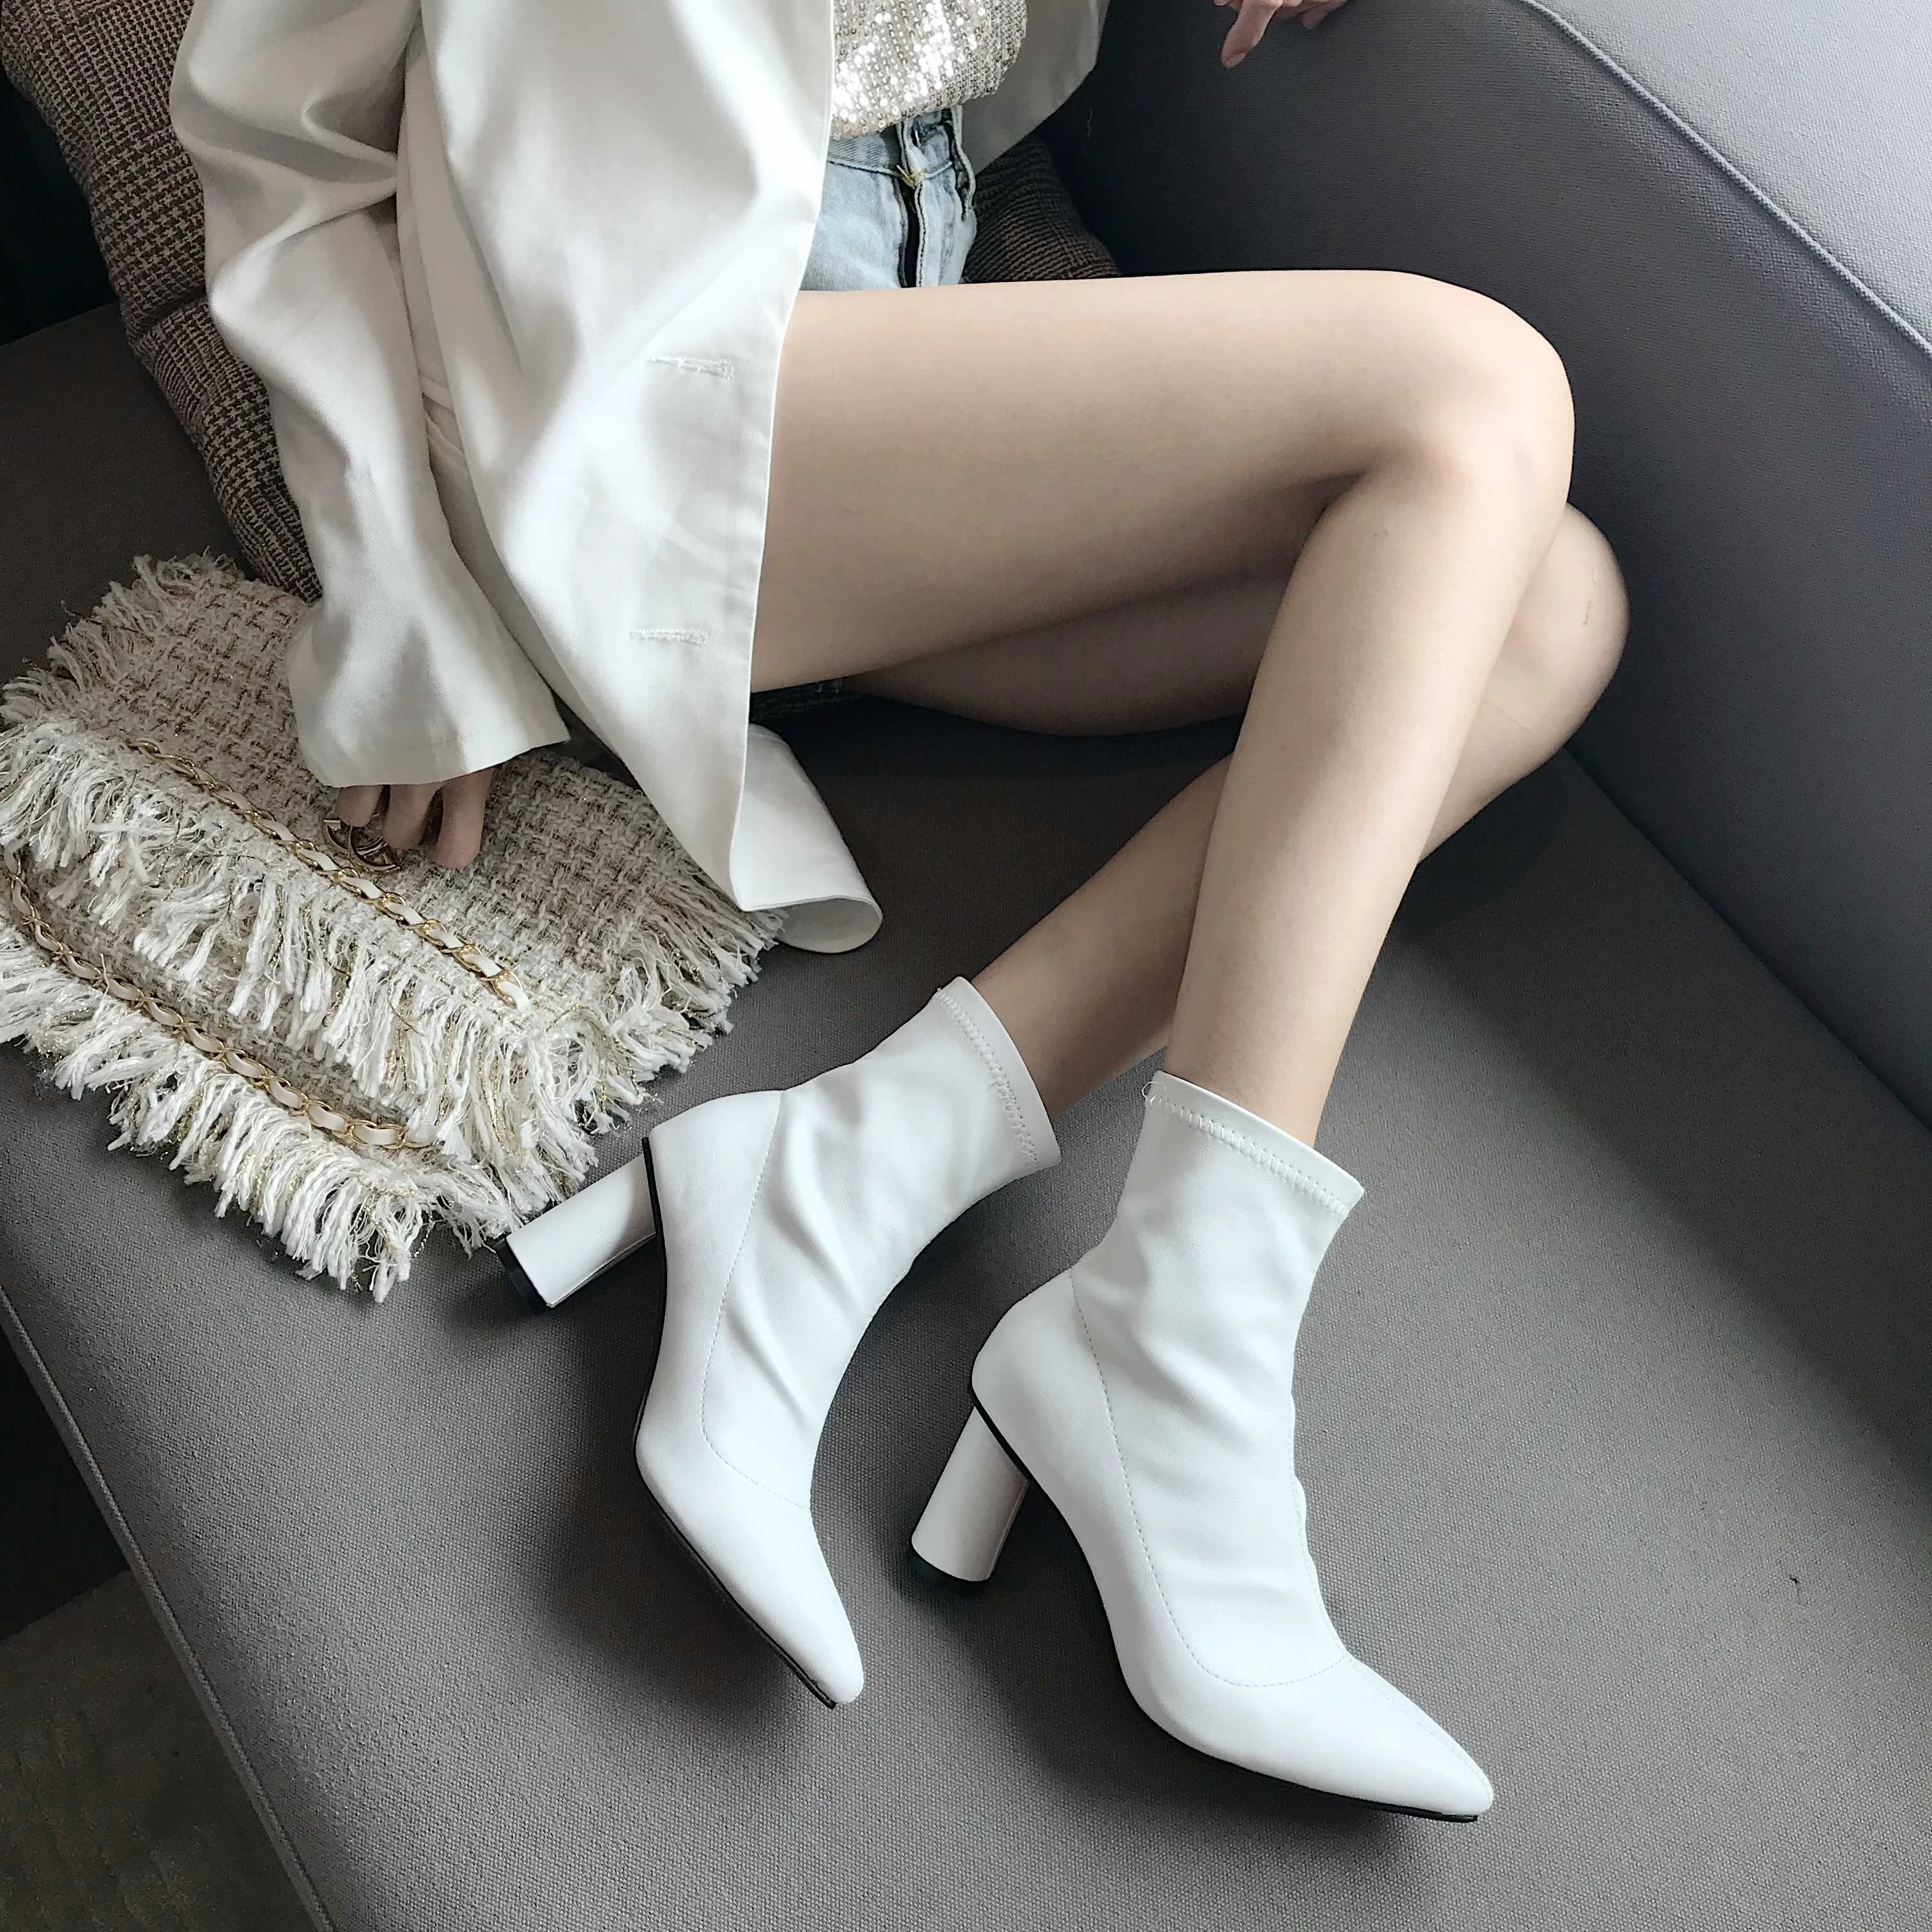 Tamano relativo resistencia versus 2019 botas blancas a la moda para mujer botas de tobillo elásticos para  damas botas de calcetines de punta estrecha tacones altos cuadrados botas  de otoño mujer|Botas hasta el tobillo| - AliExpress